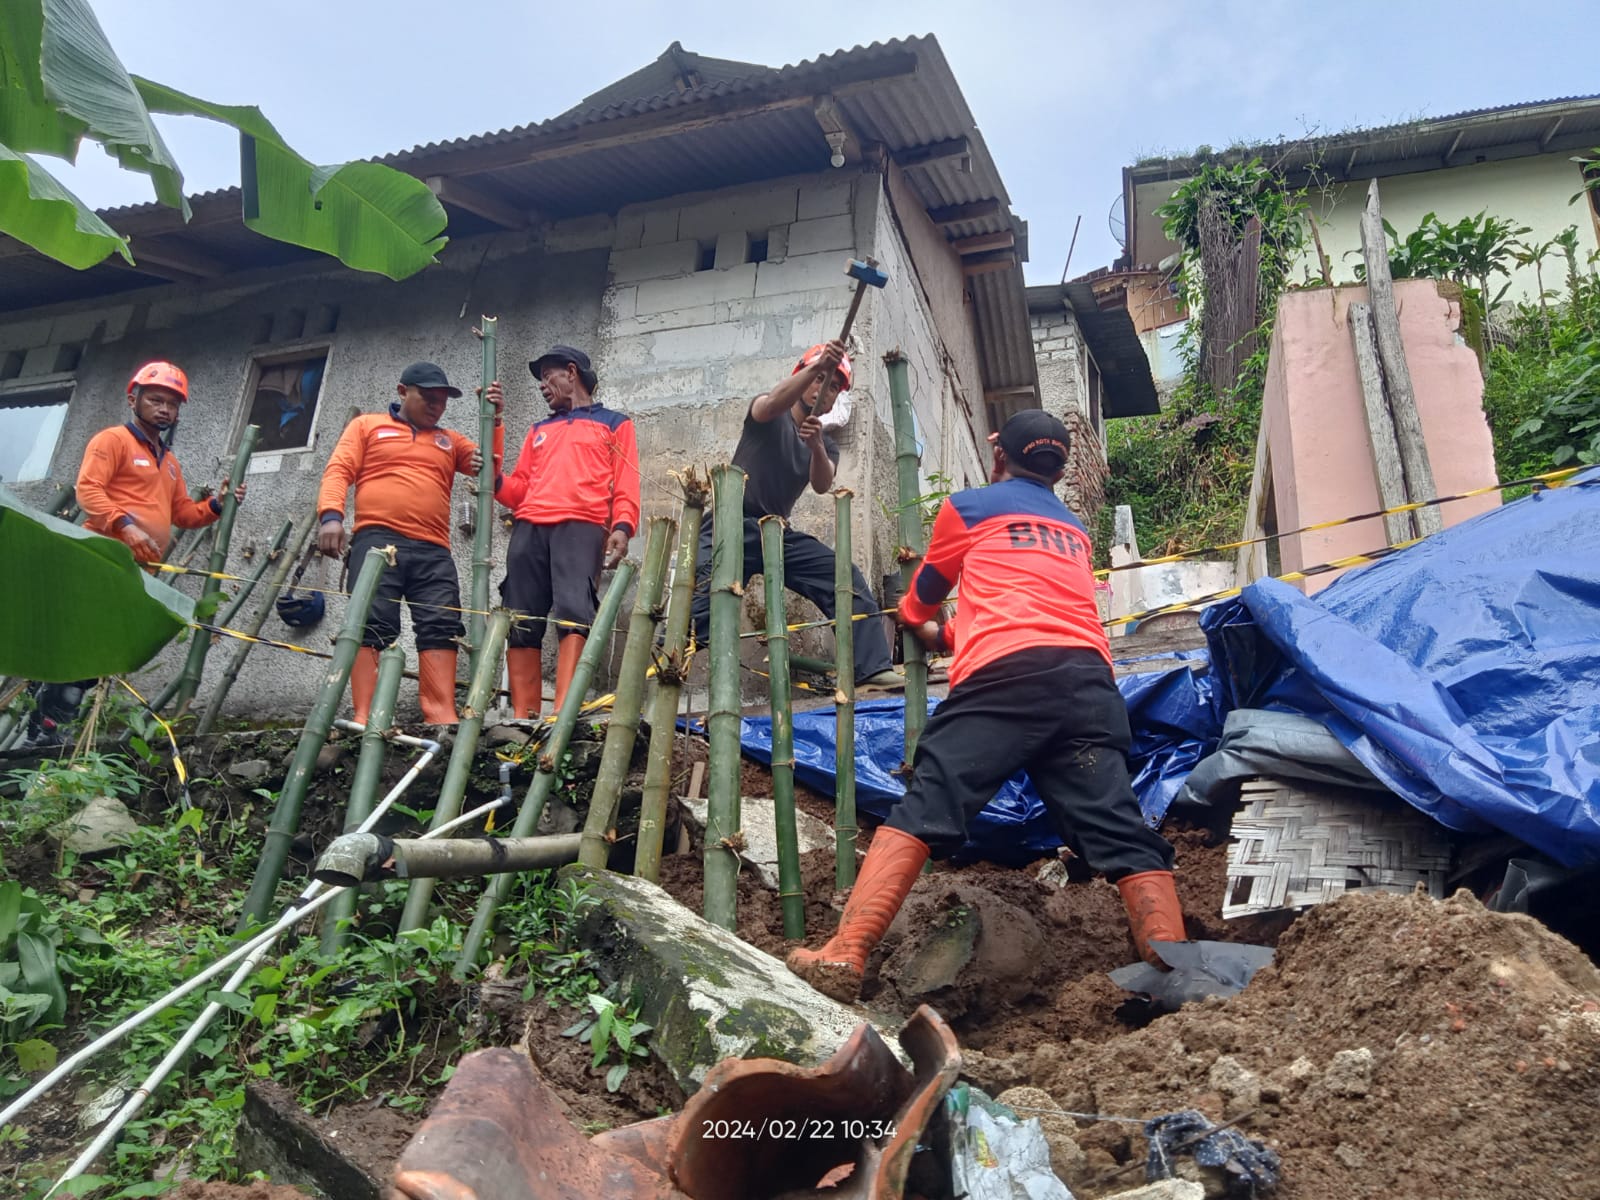 EVAKUASI: Sejumlah petugas BPBD Kota Sukabumi saat melakukan evakuasi bencana alam yang terjadi di wilayah kerjanya, belum lama ini.